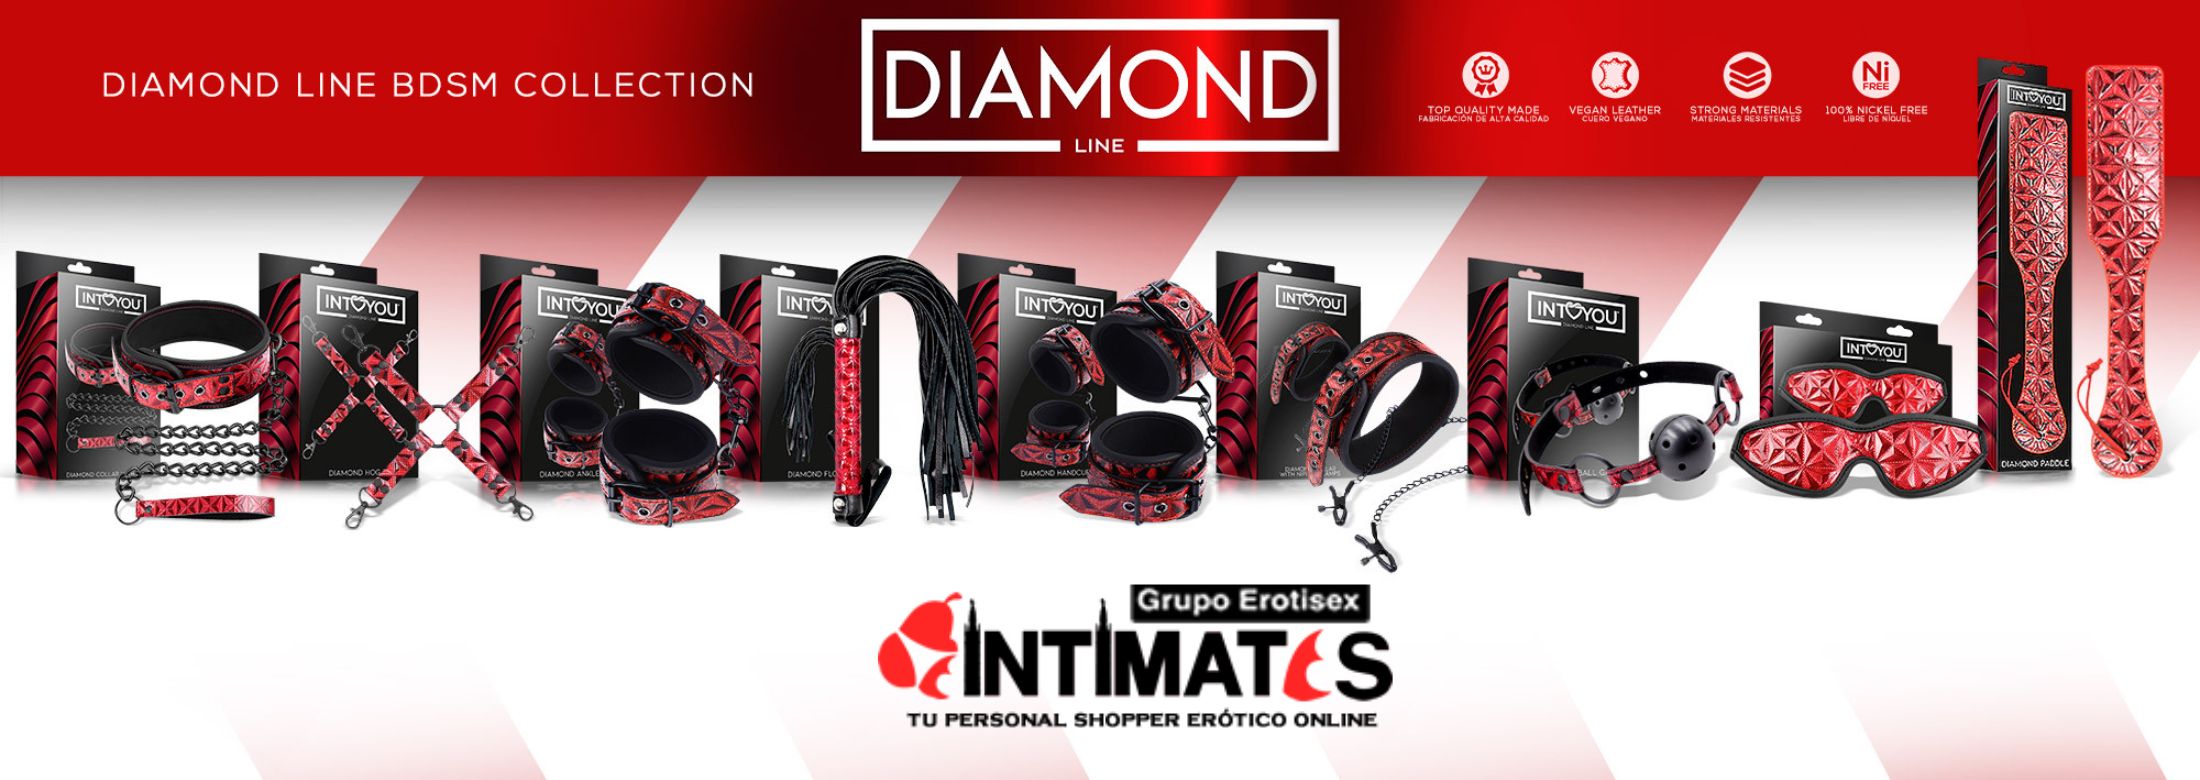 Te presentamos la coleccion Diamond Line de Intoyou, que puedes adquirir en intimates.es "Tu Personal Shopper Erótico Online" 